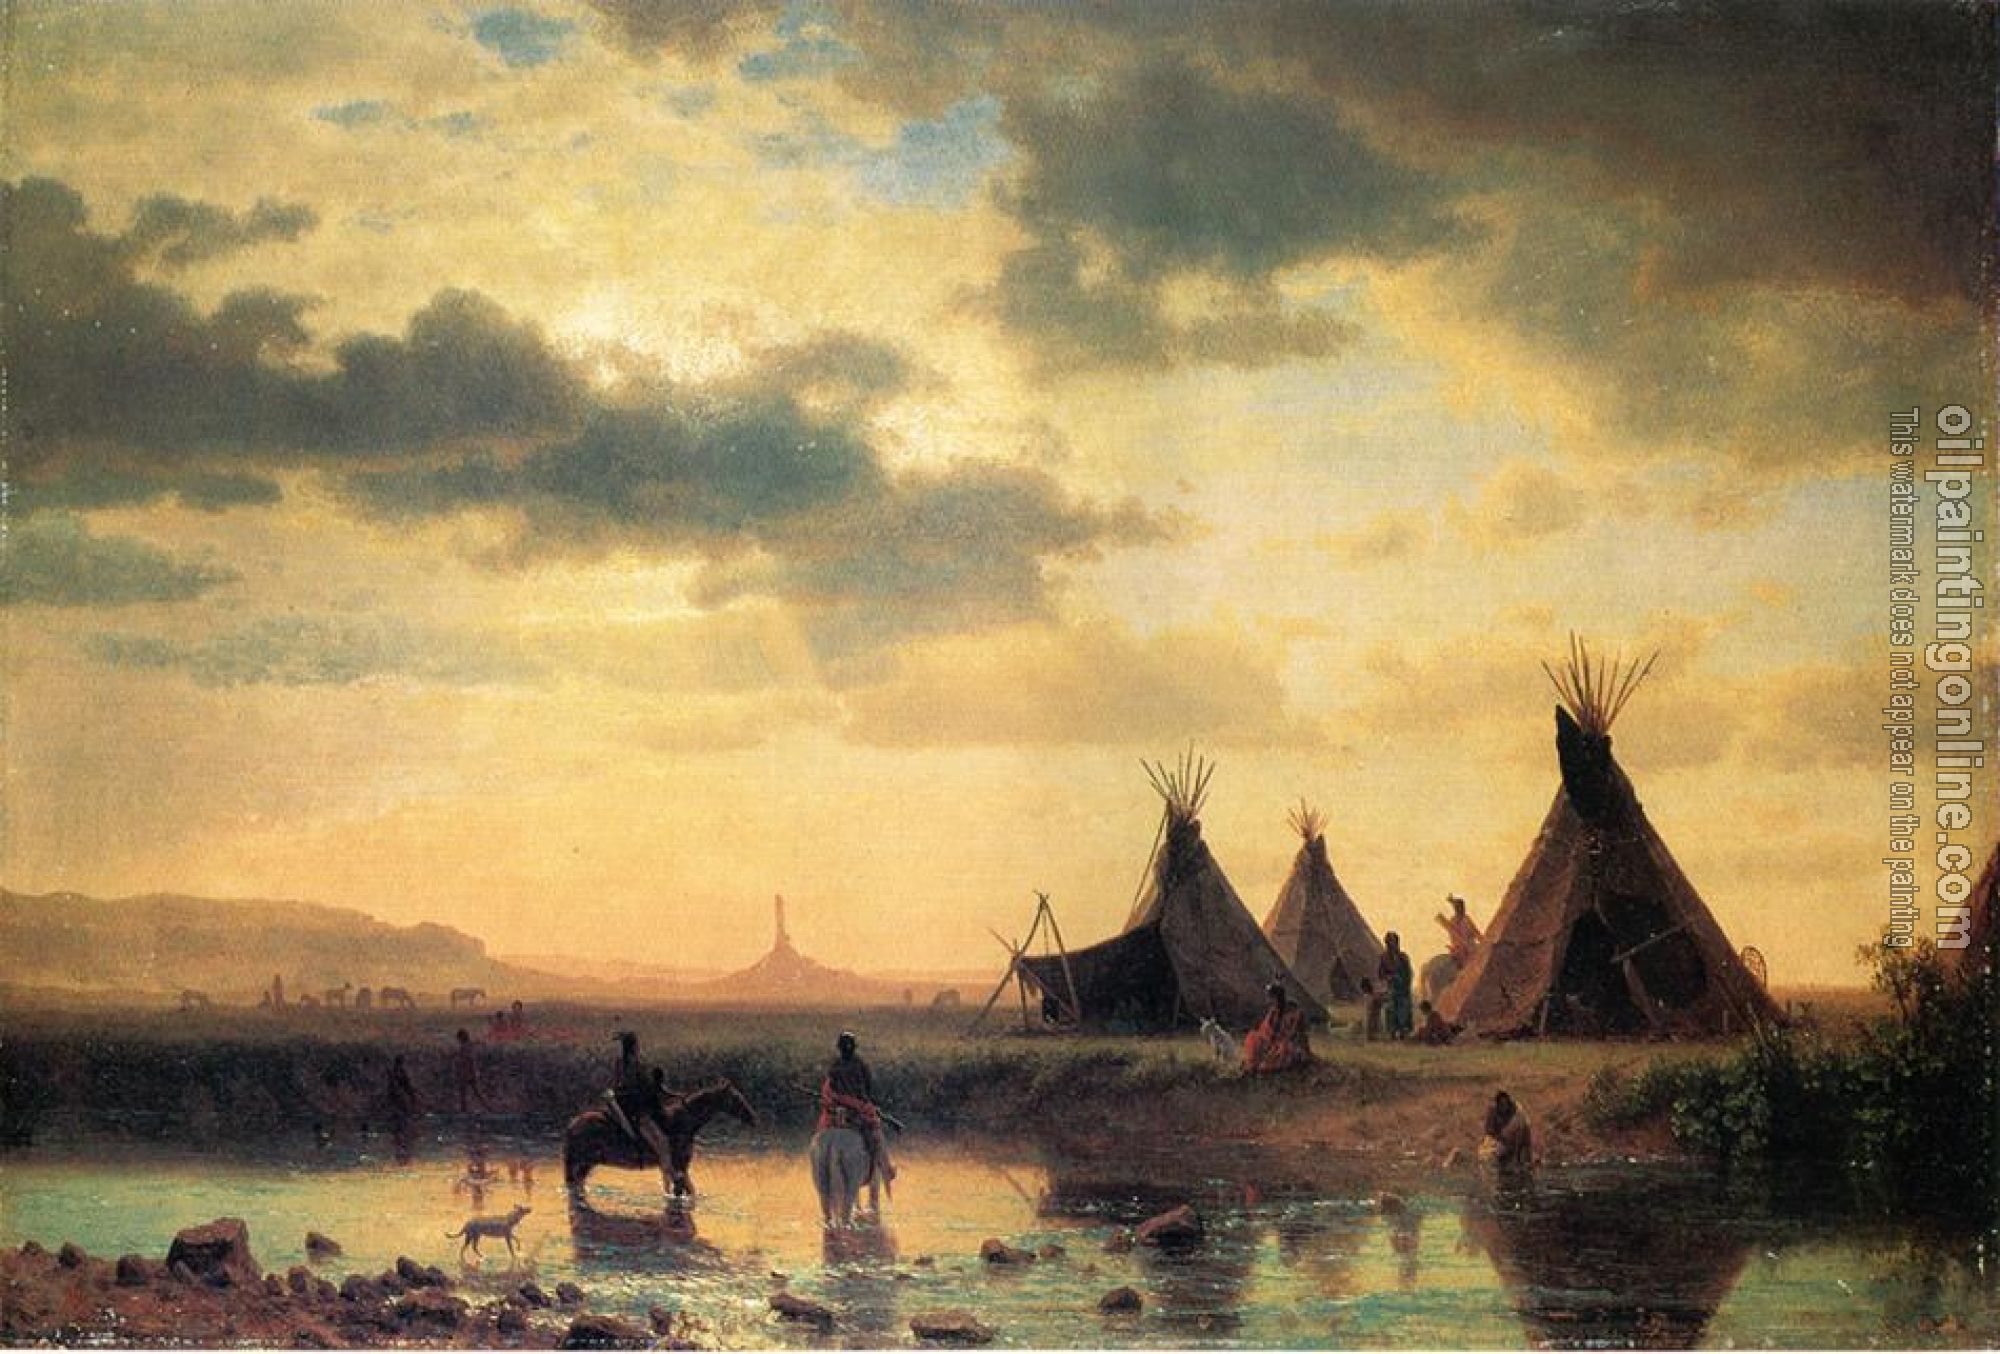 Bierstadt, Albert - View of Chimney Rock Ogalillalh Sioux Village in Foreground